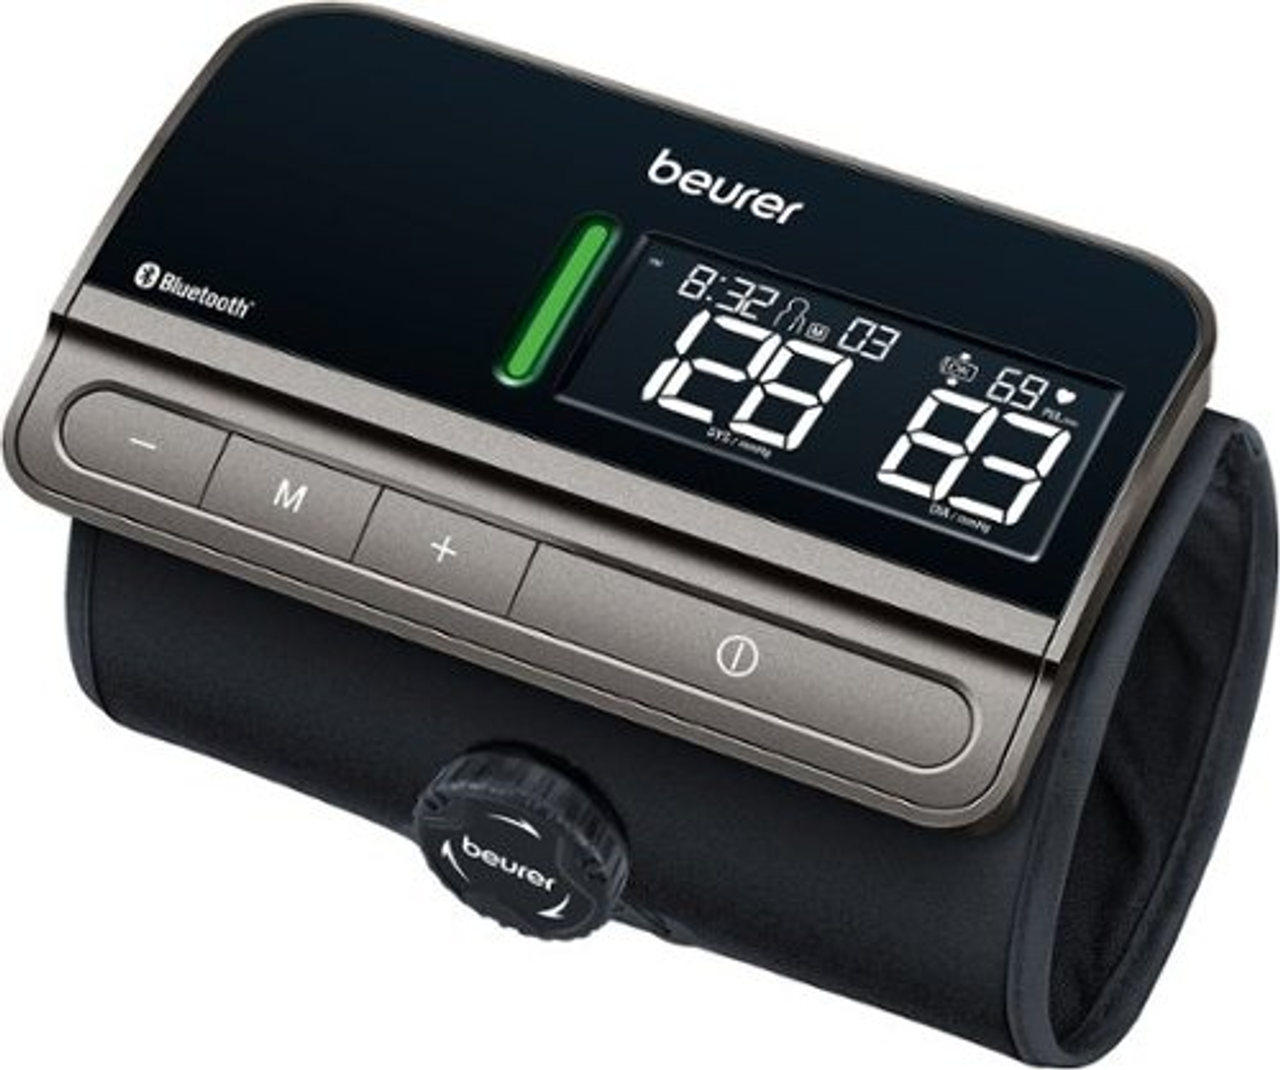 Beurer - BM81 easyLock - upper arm blood pressure monitor - black